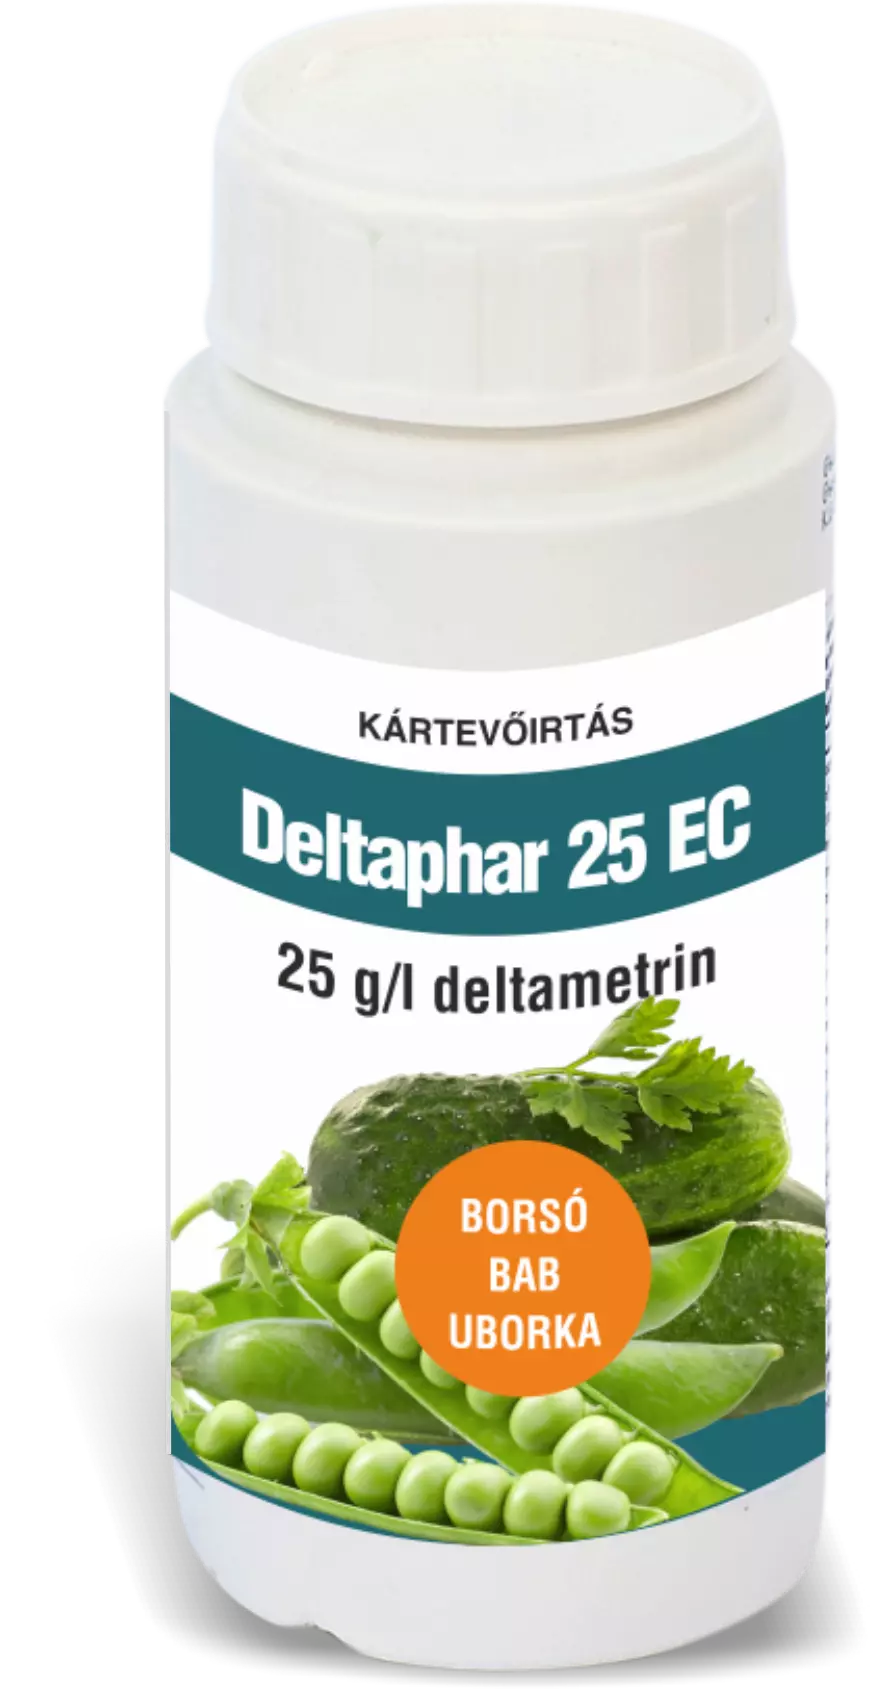 Deltaphar 25 EC